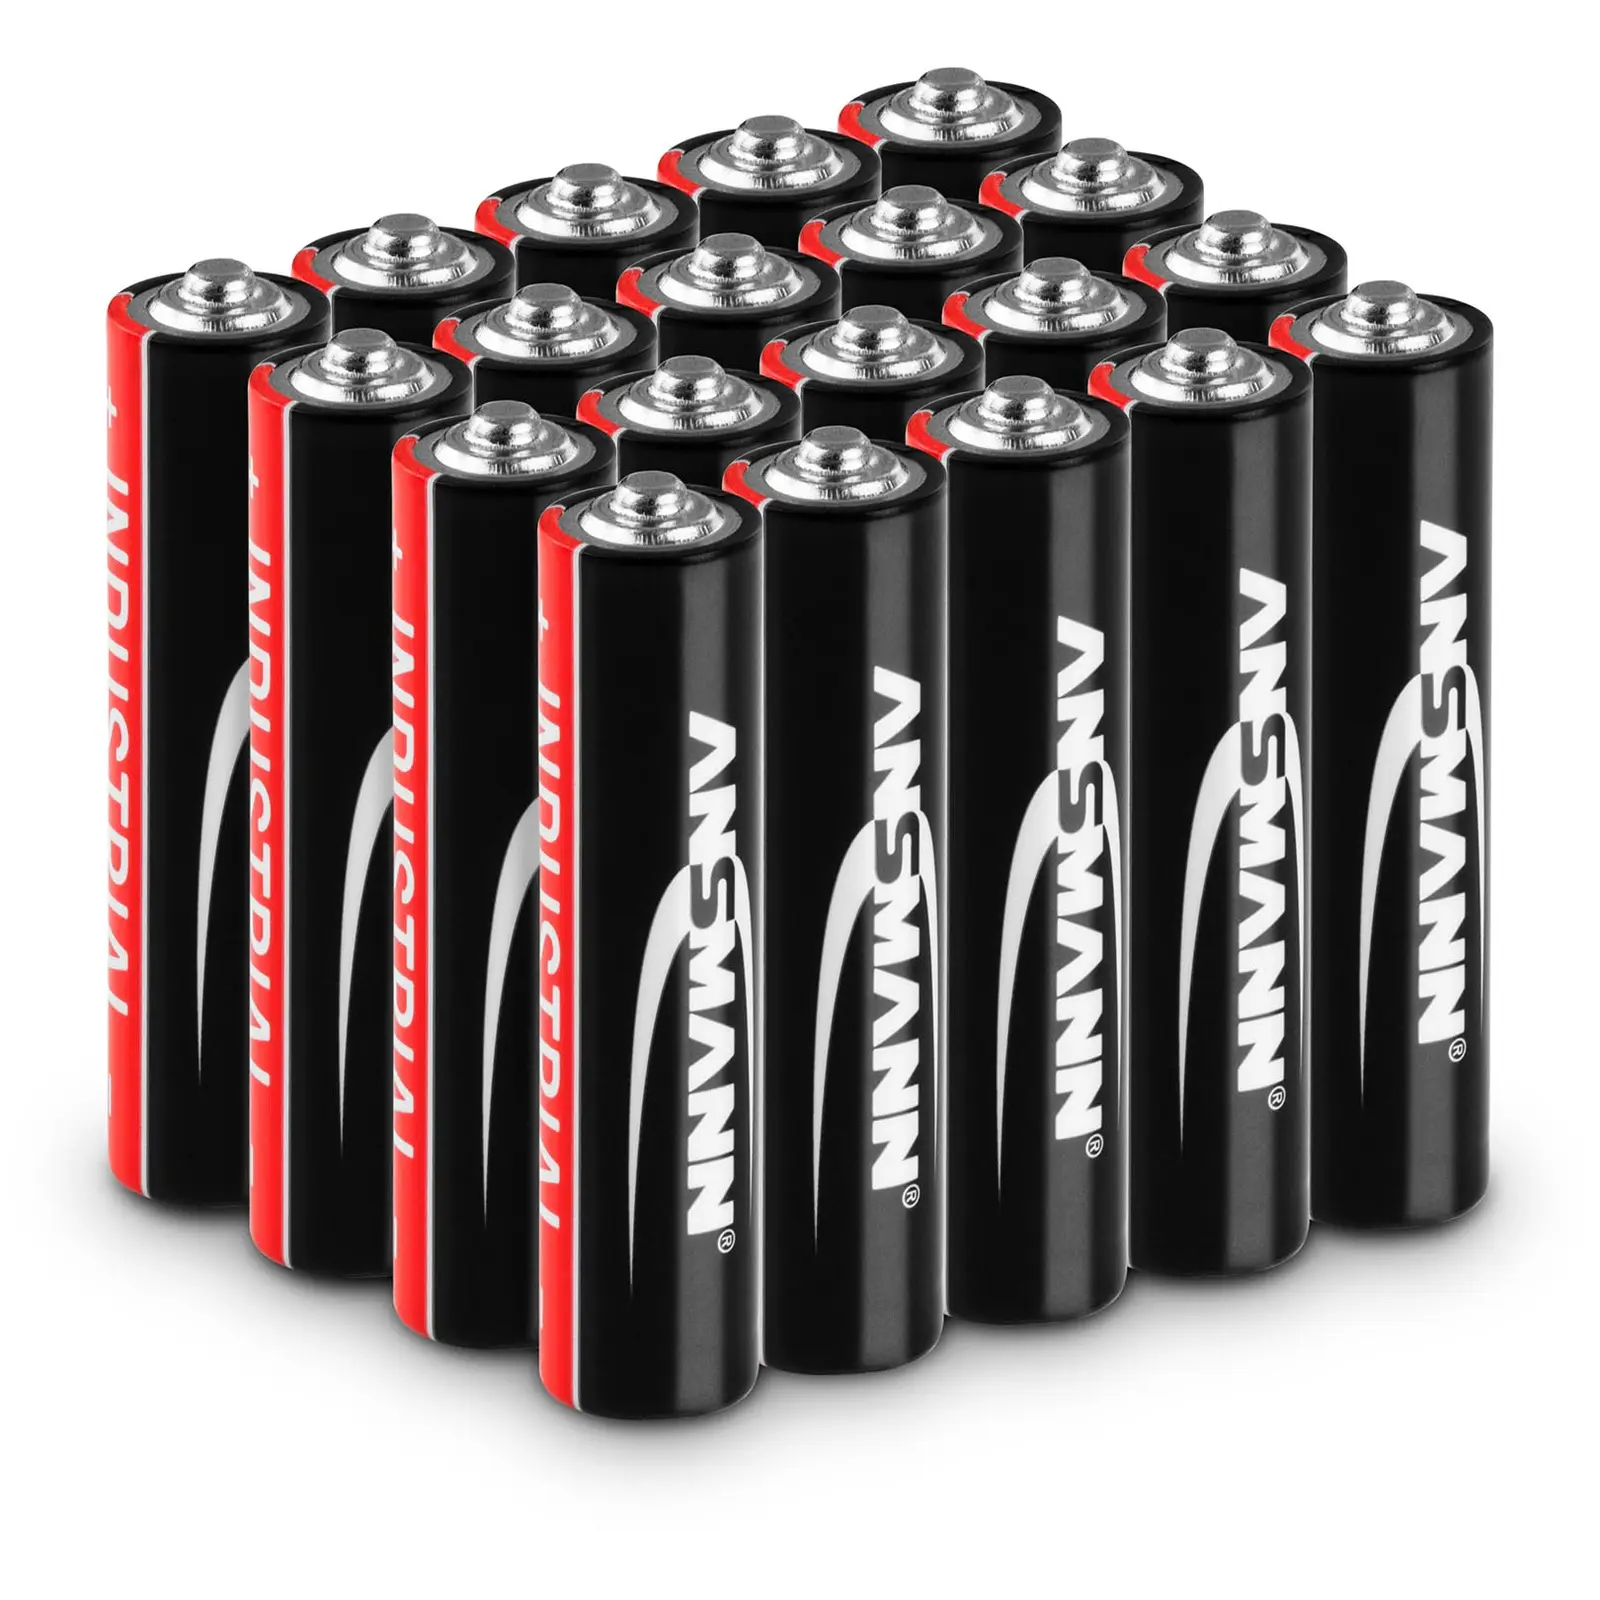 Alkaline-batterier - Ansmann INDUSTRIAL - 20 stk. type AAA LR03 1,5 V